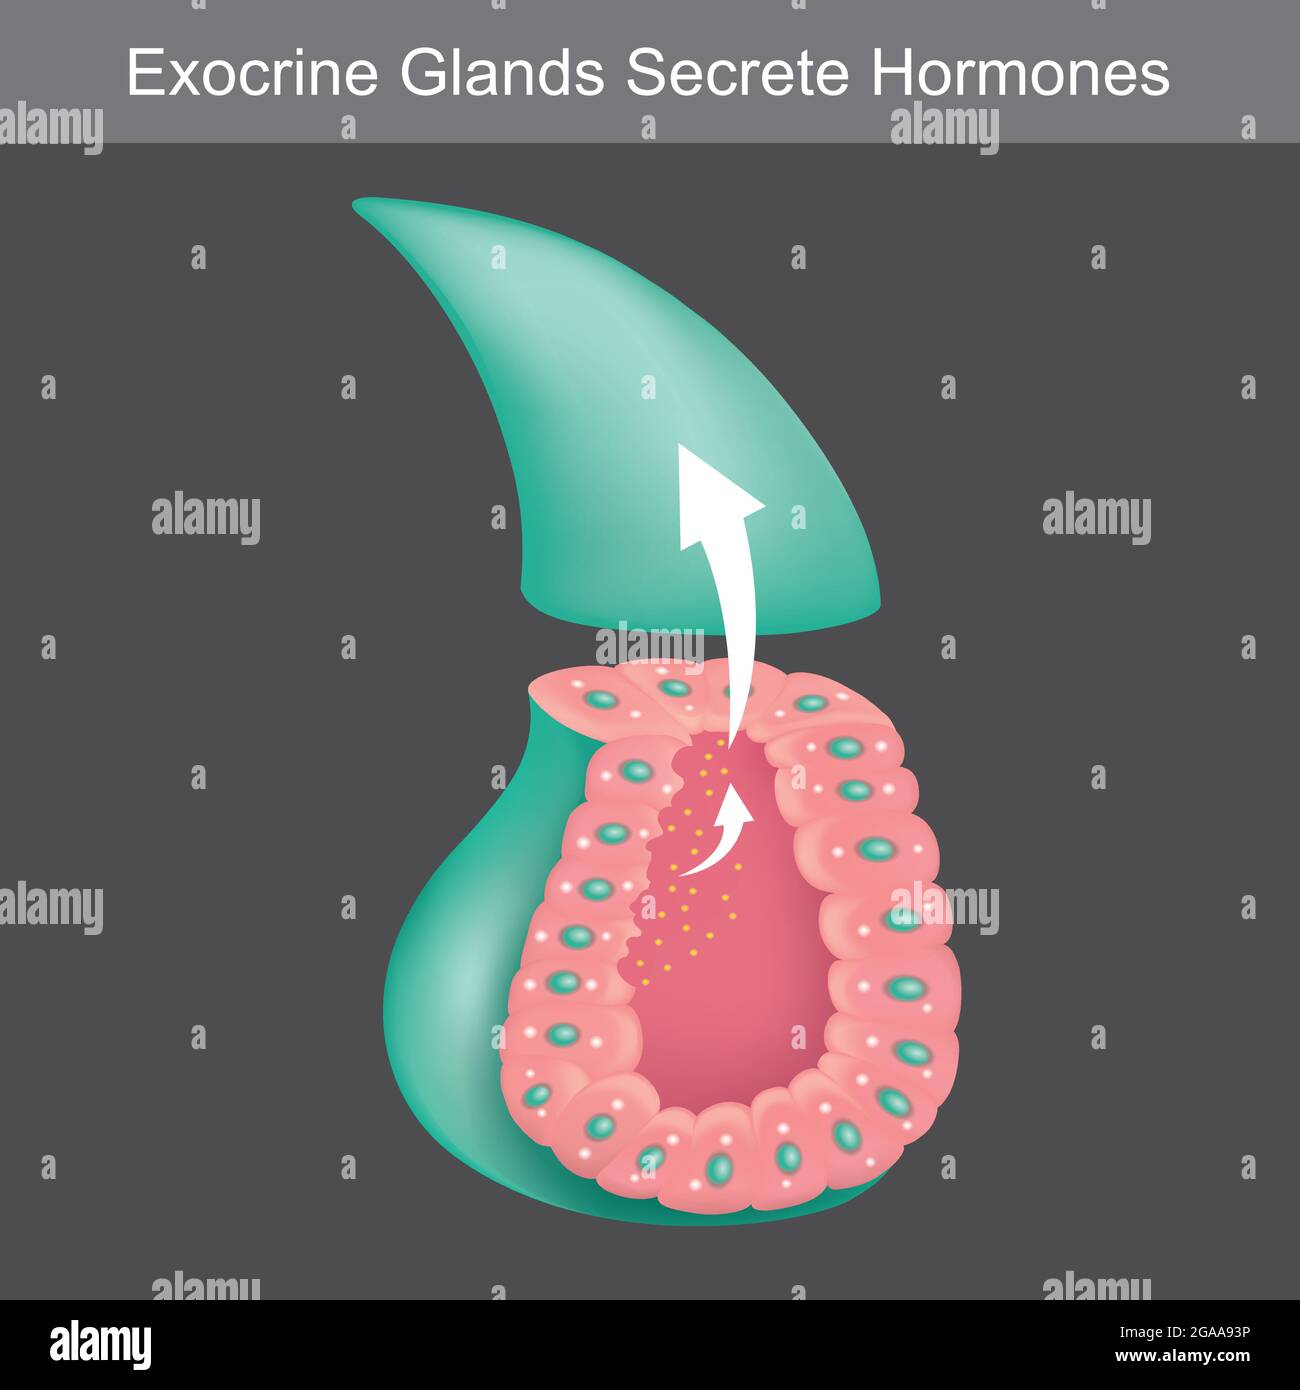 Les glandes exocrines sécrètent des hormones. Illustration montrant une coupe transversale pour l'apprentissage des glandes exocrines humaines. Illustration de Vecteur